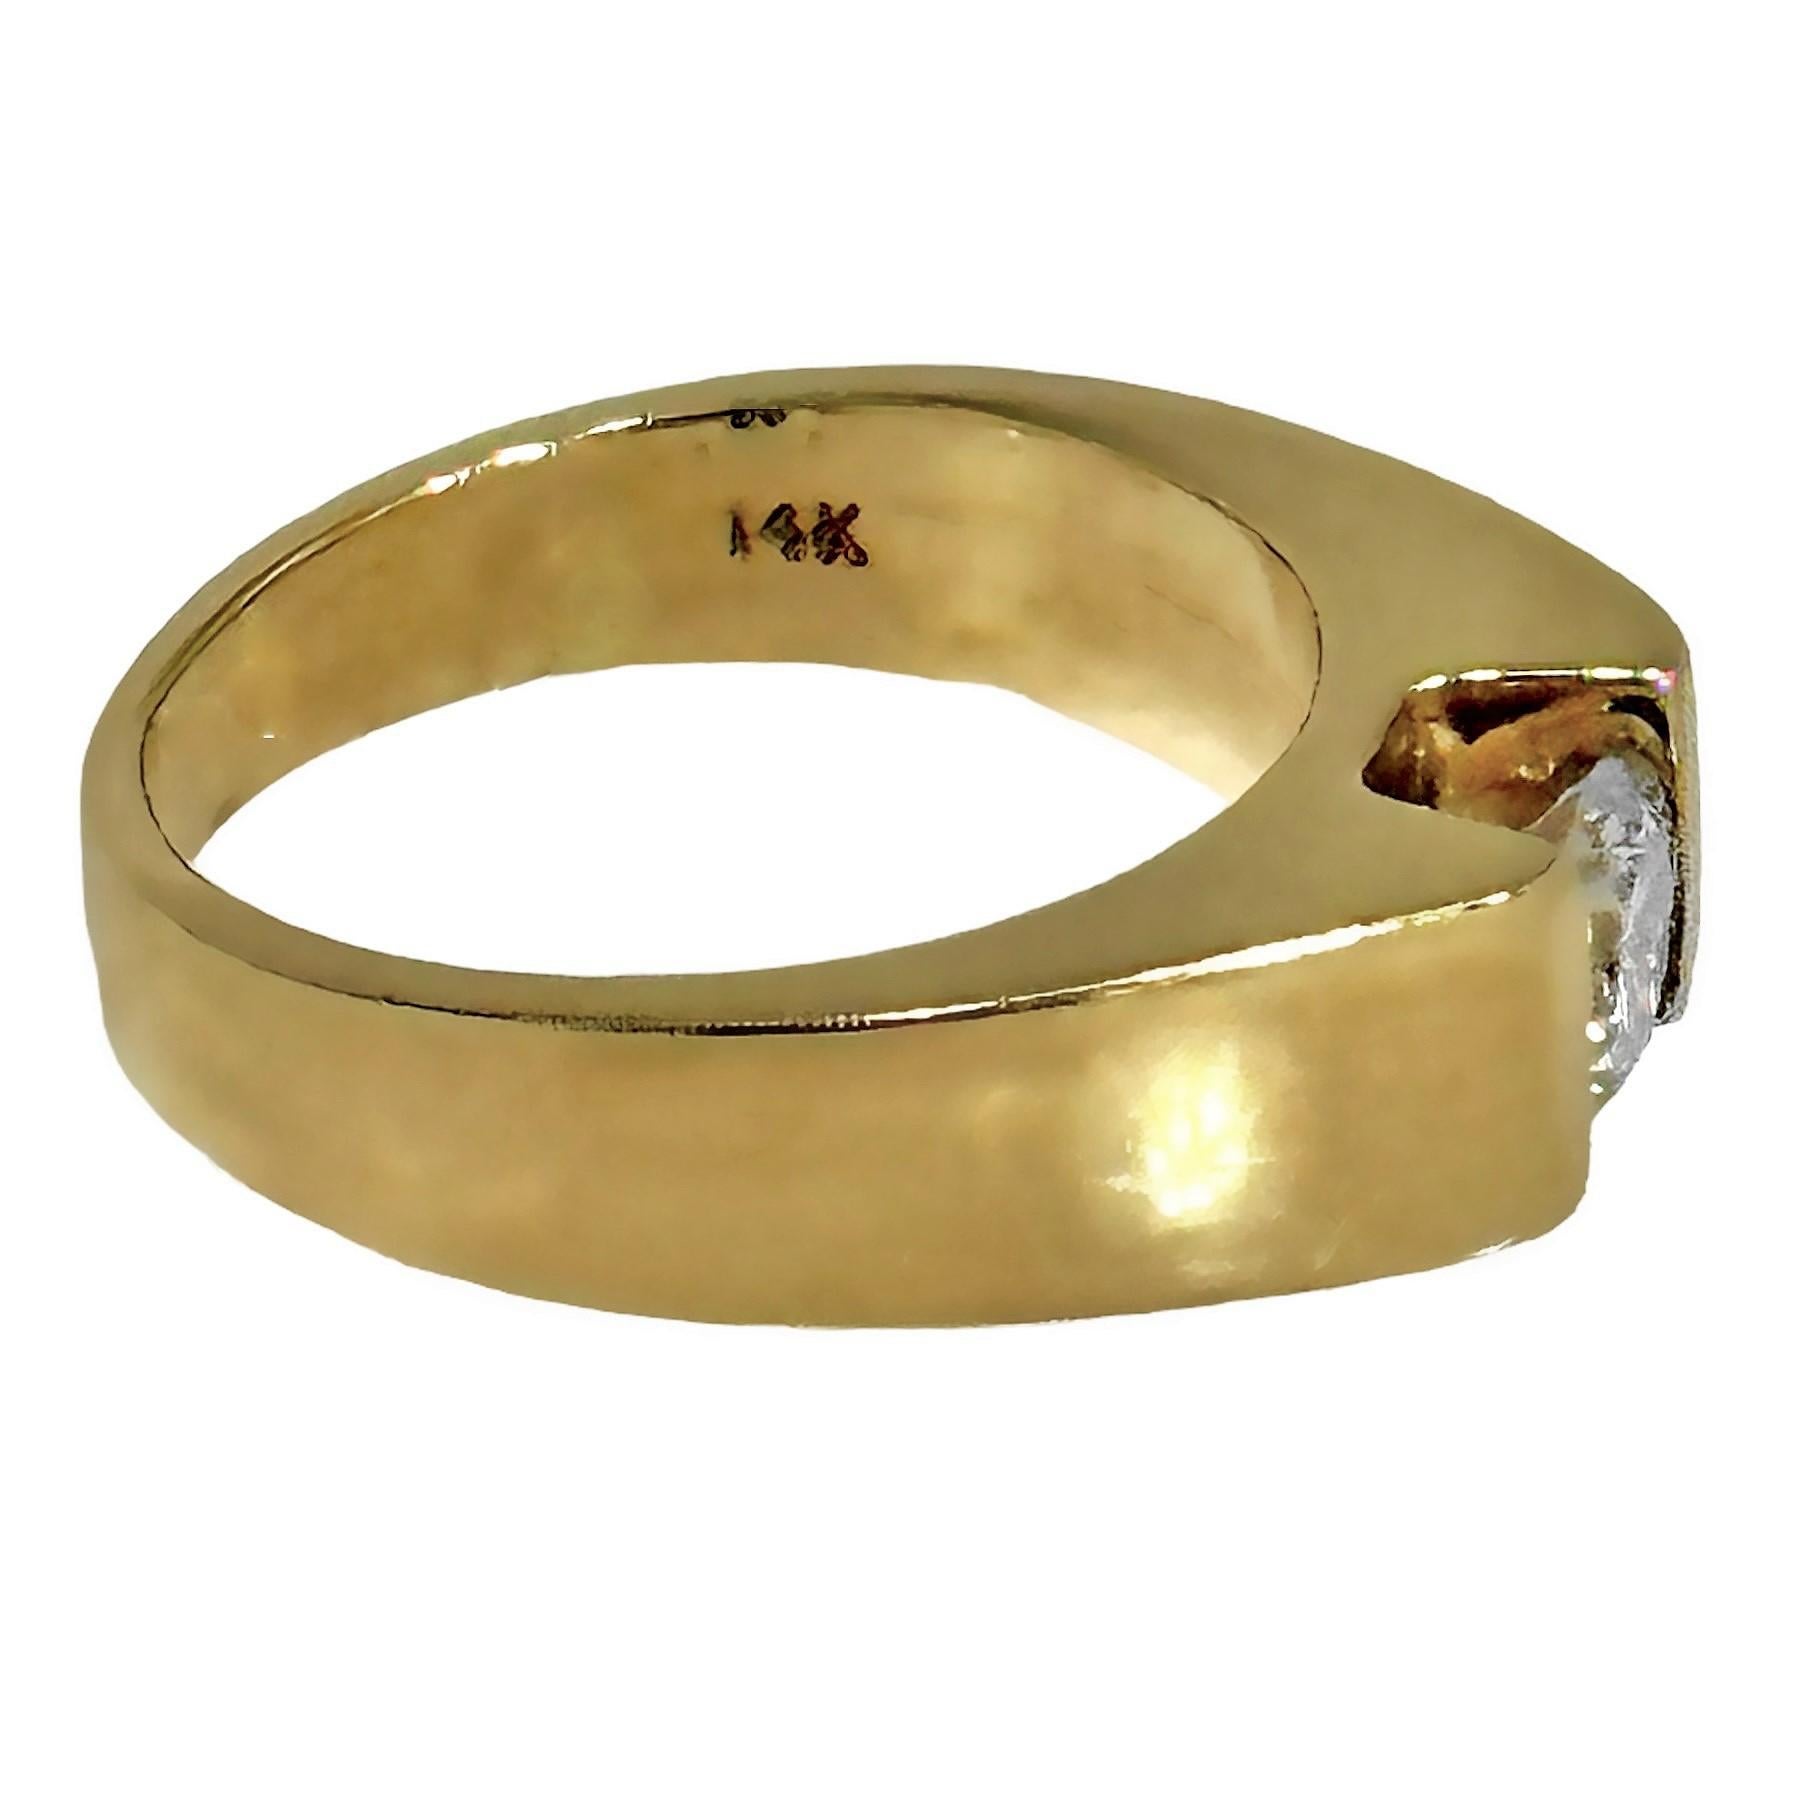 Ein schlichter, modern anmutender Ring aus 14 Karat Gelbgold mit einem halben Karat Diamant. Die Schultern des Rings erheben sich etwa 1/5 Zoll über den Finger, so dass der Diamant in der richtigen Höhe gefasst werden kann. Die Spannungsfassung